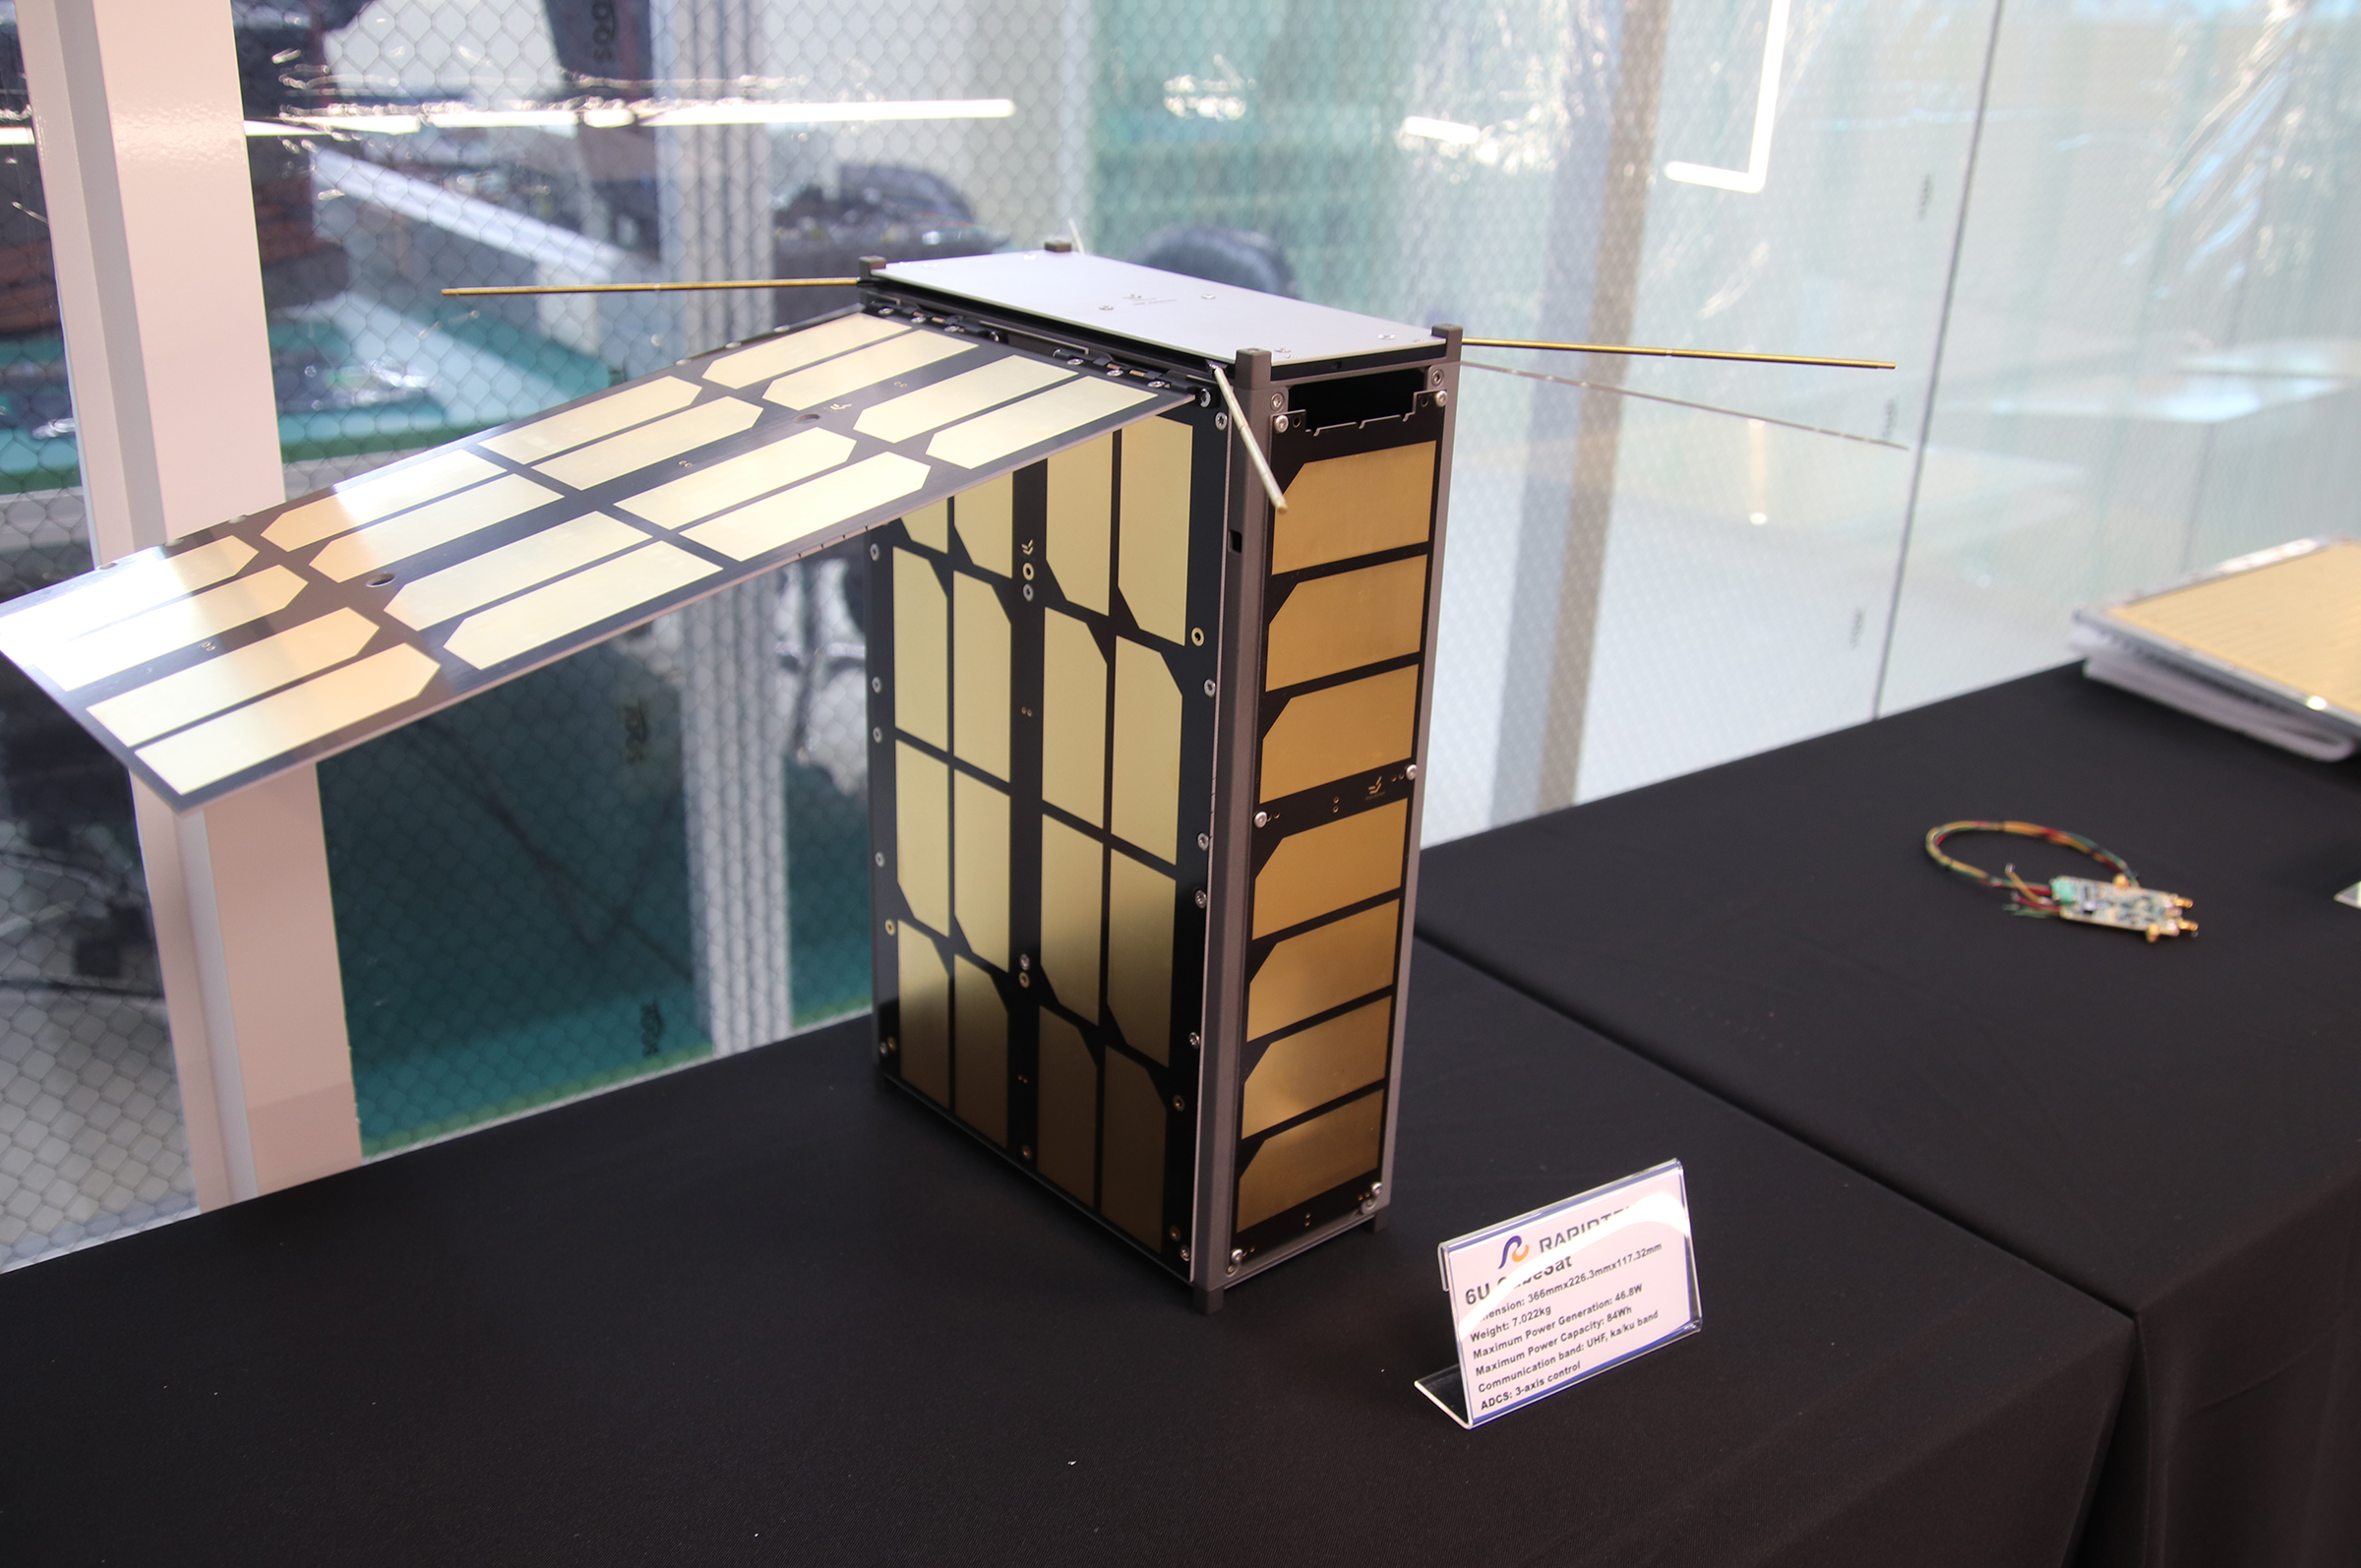 中央大學太空科學與科技研究中心展示6U衛星模型，展現太空研發實力。陳如枝攝